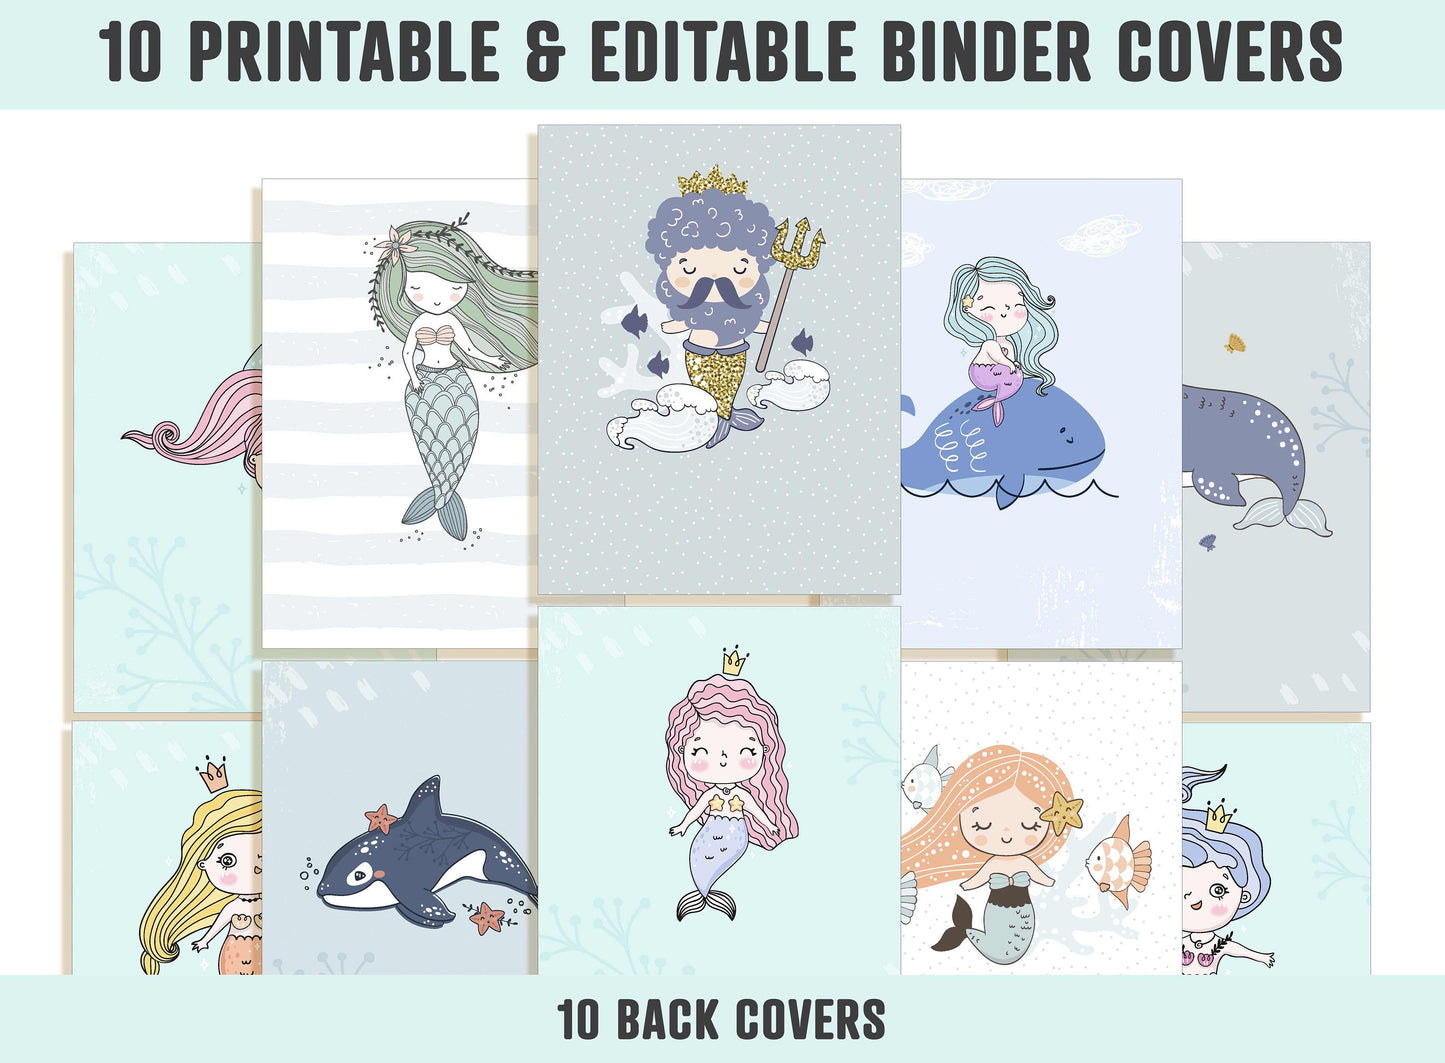 Mermaid Binder Cover, 10 Printable & Editable Covers+Spines, Binder Insert, Planner Cover, Teacher/School Binder Template, Sea Animal, Whale